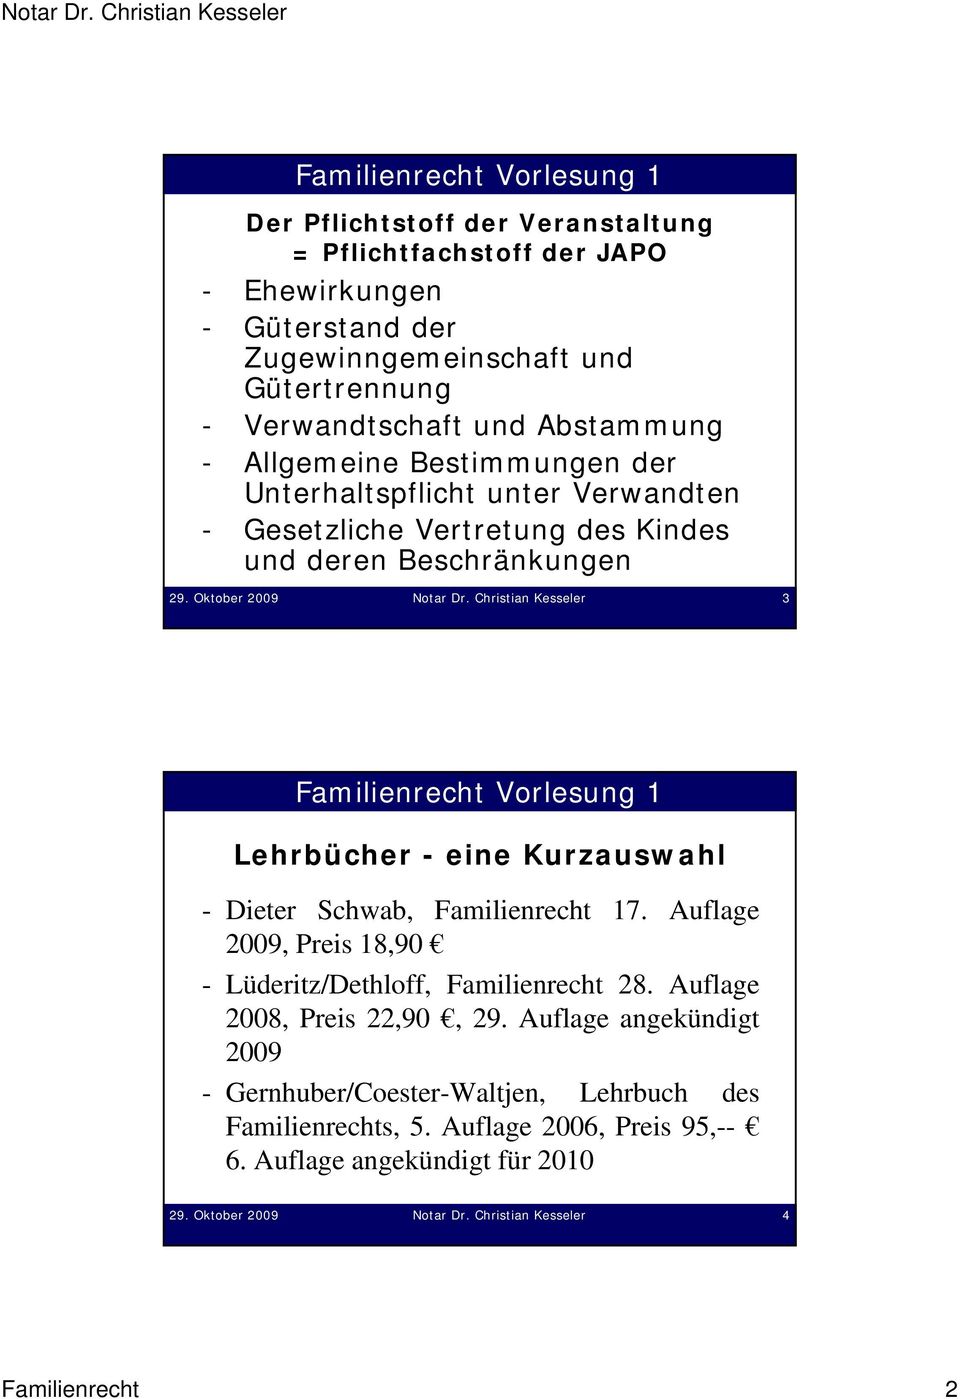 Christian Kesseler 3 Lehrbücher - eine Kurzauswahl - Dieter Schwab, Familienrecht 17. Auflage 2009, Preis 18,90 - Lüderitz/Dethloff, Familienrecht 28.